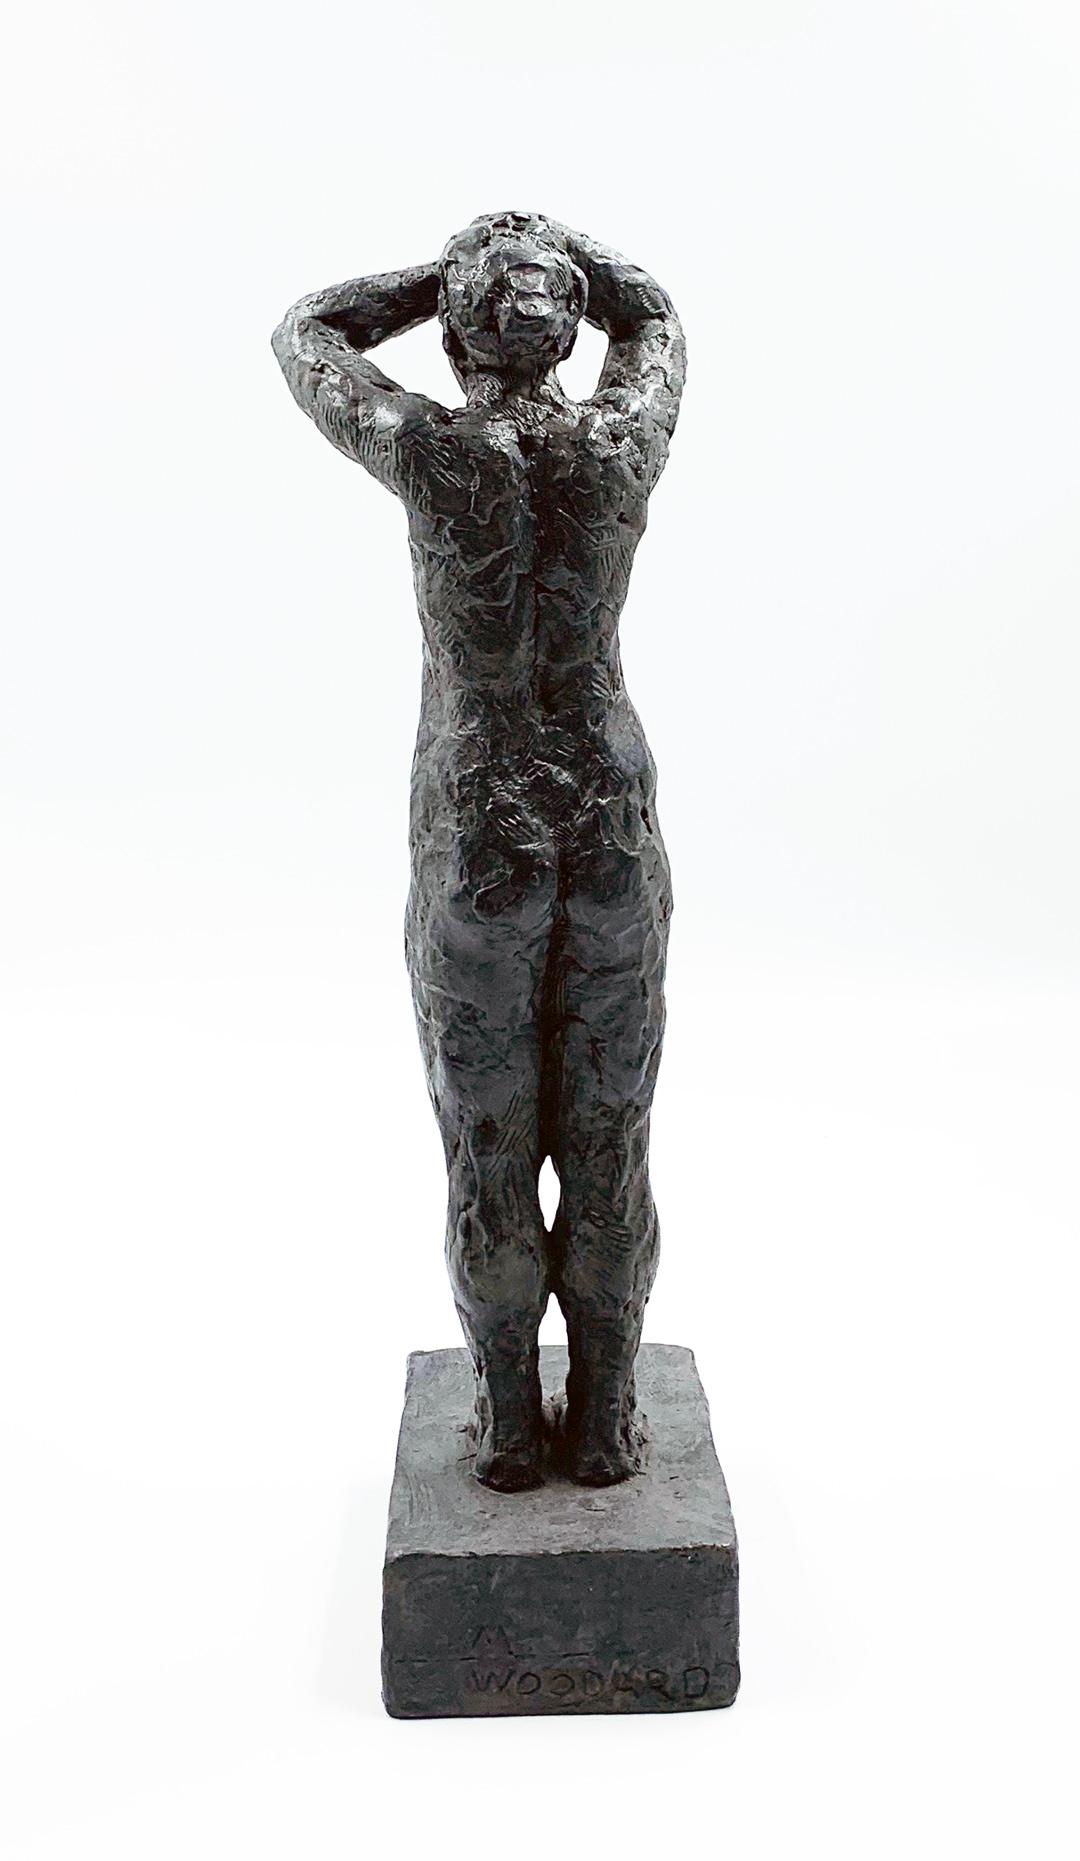 Elle tourne pour visager le soleil - sculpture figurative contemporaine en bronze - Contemporain Sculpture par Manny Woodard